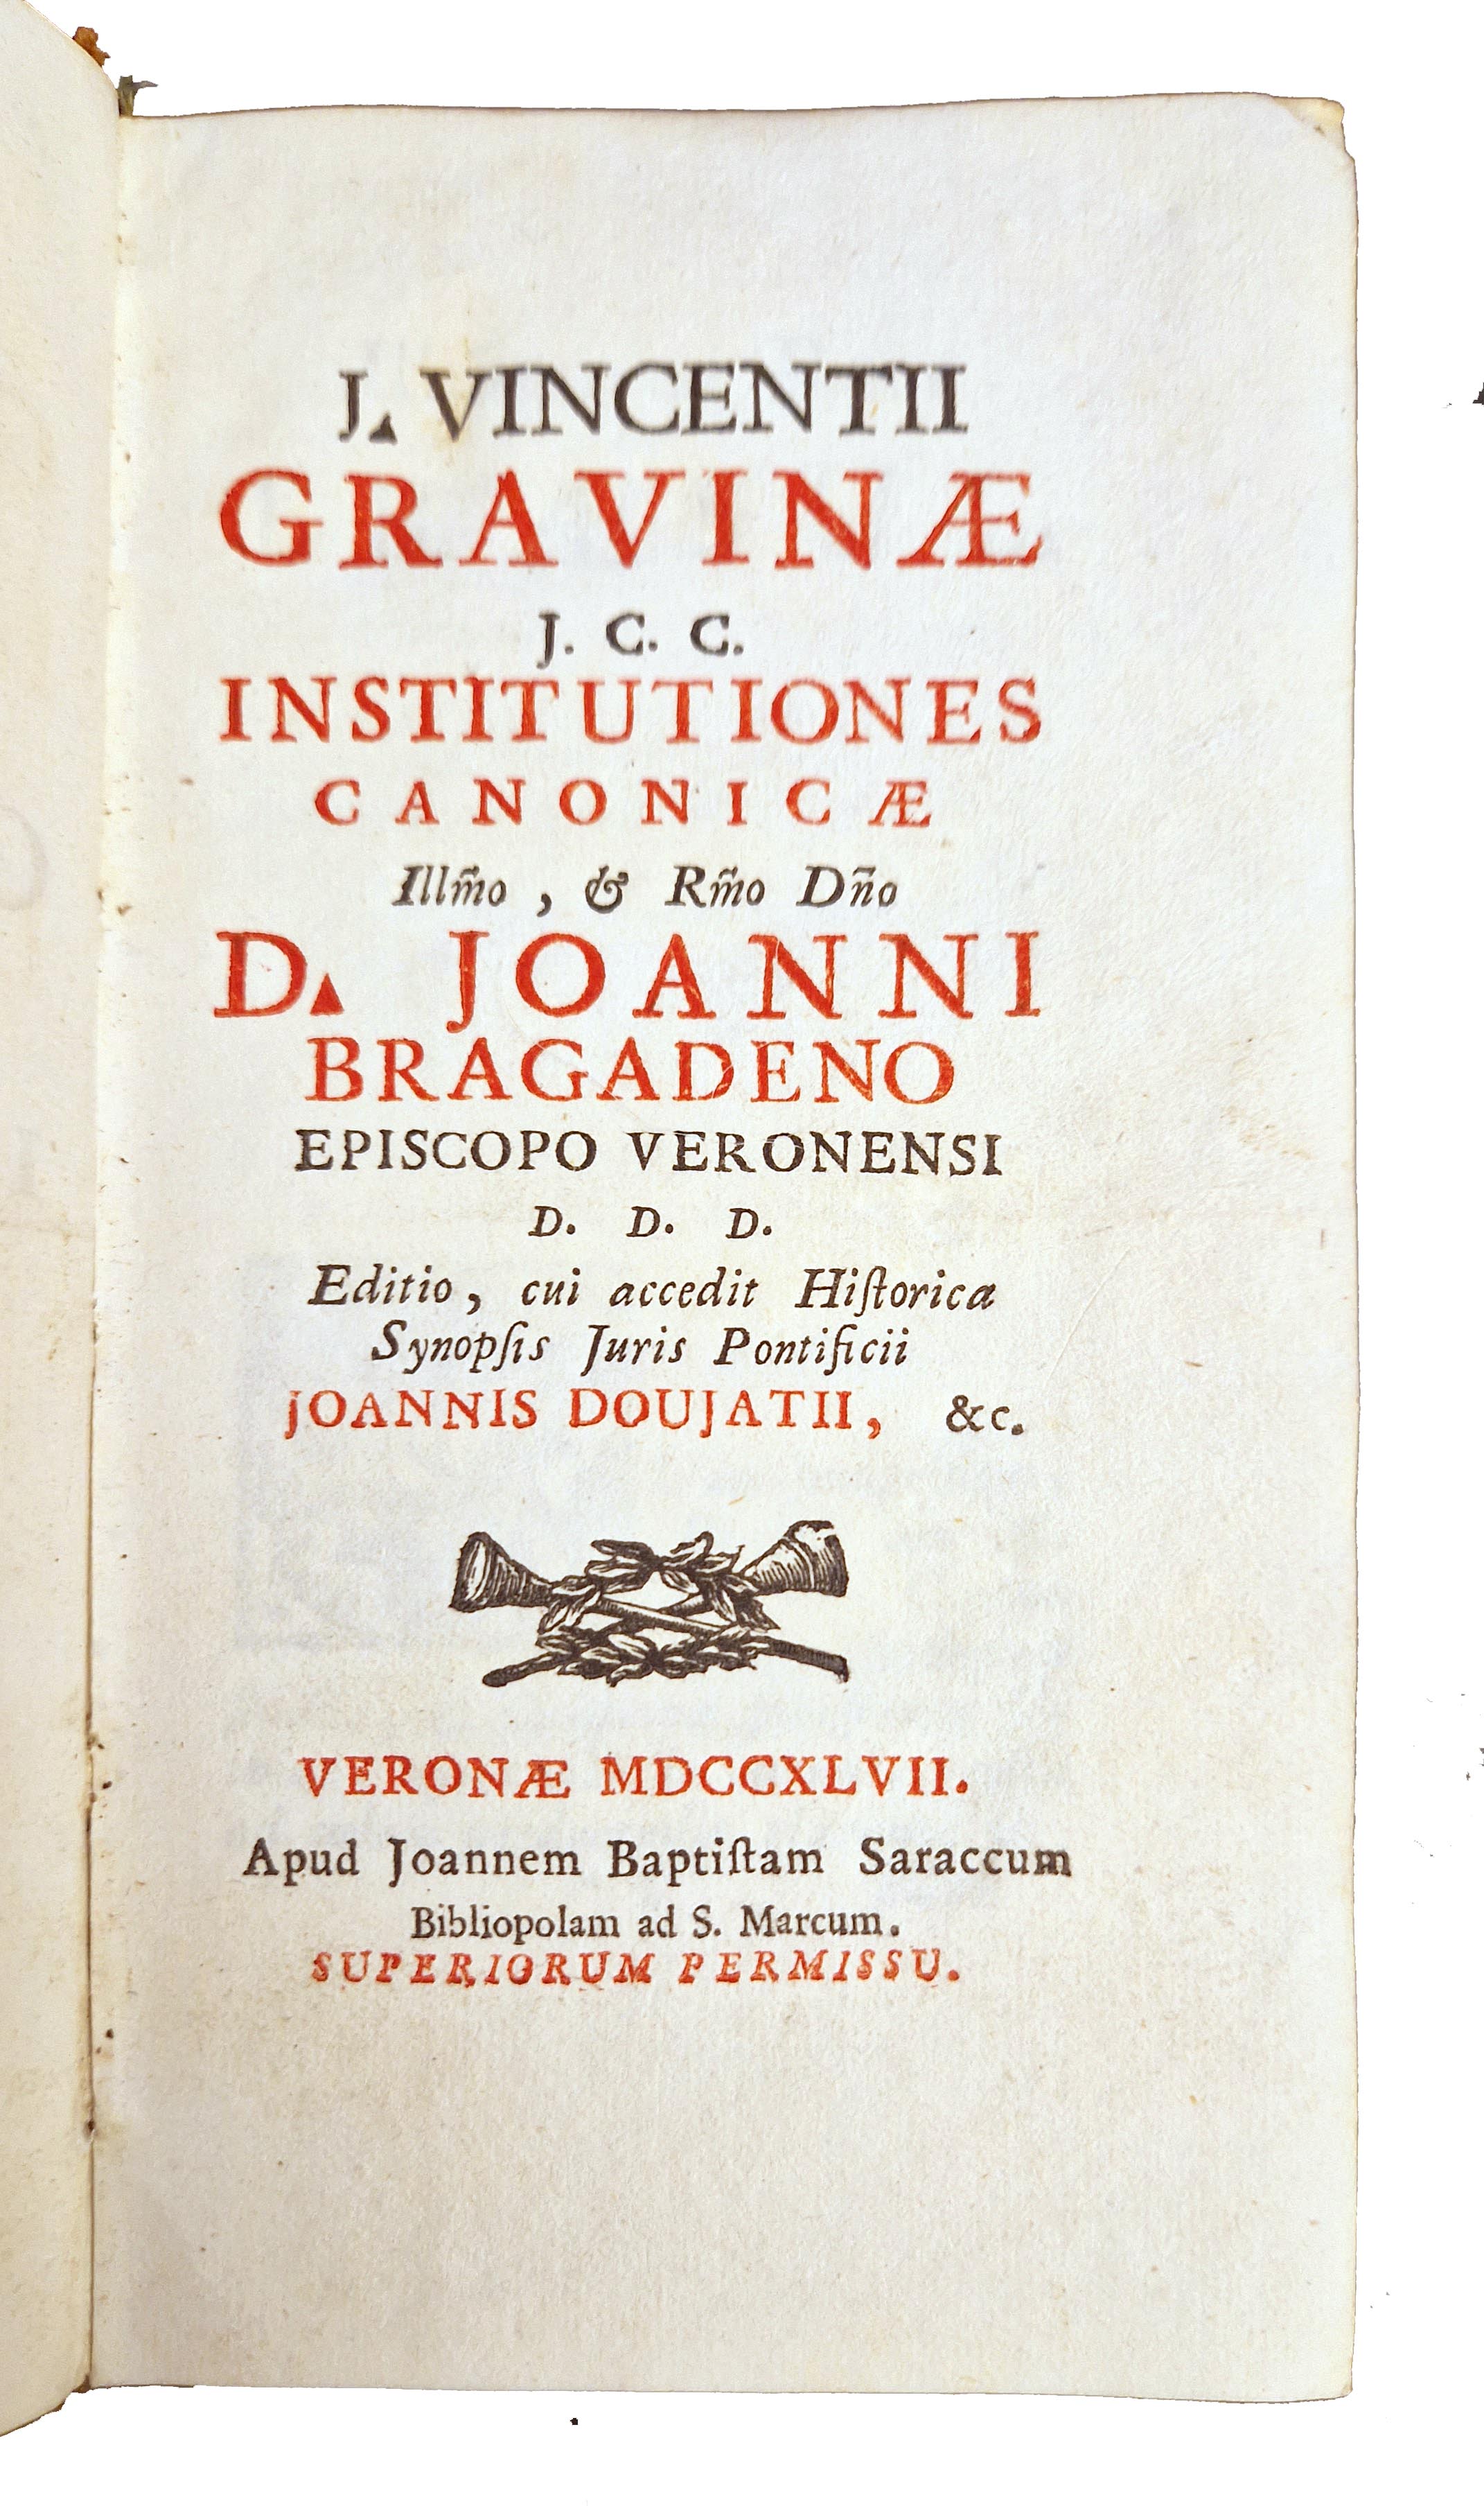 J. Vincentii Gravinae J.C.C. Institutiones canonicae Ill.mo, et R.mo D.no …